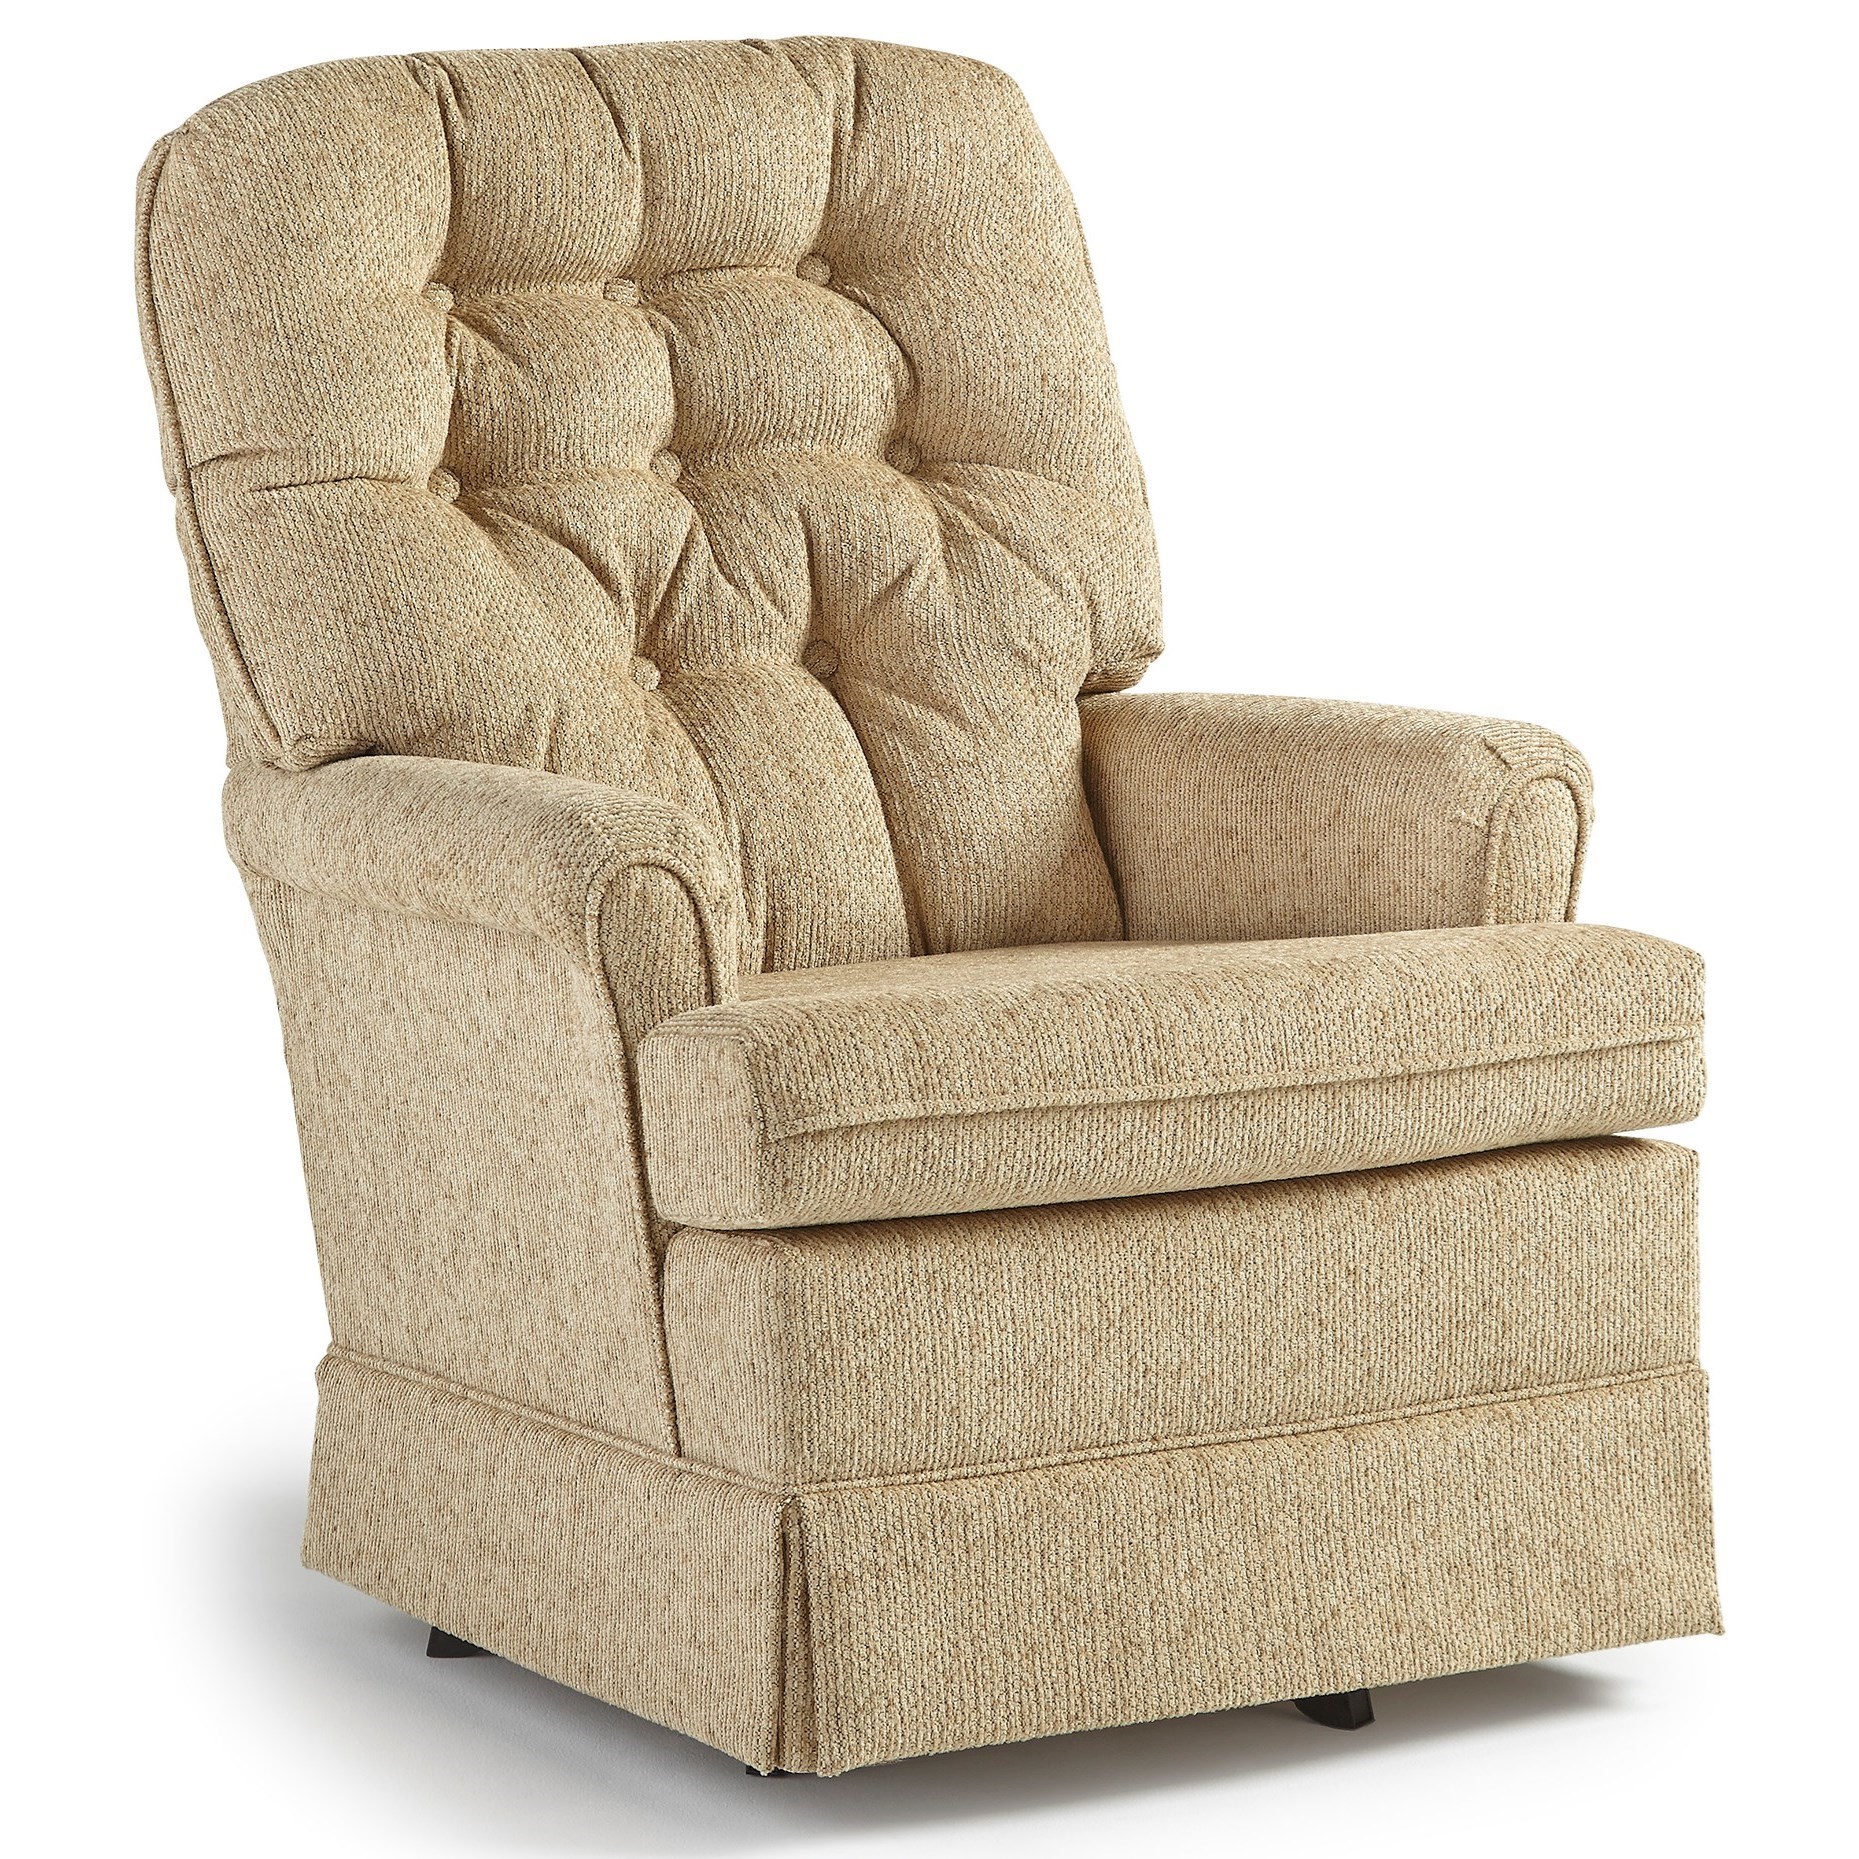 Best Home Furnishings Swivel Glide ChairsJoplin Swivel Rocker Chair